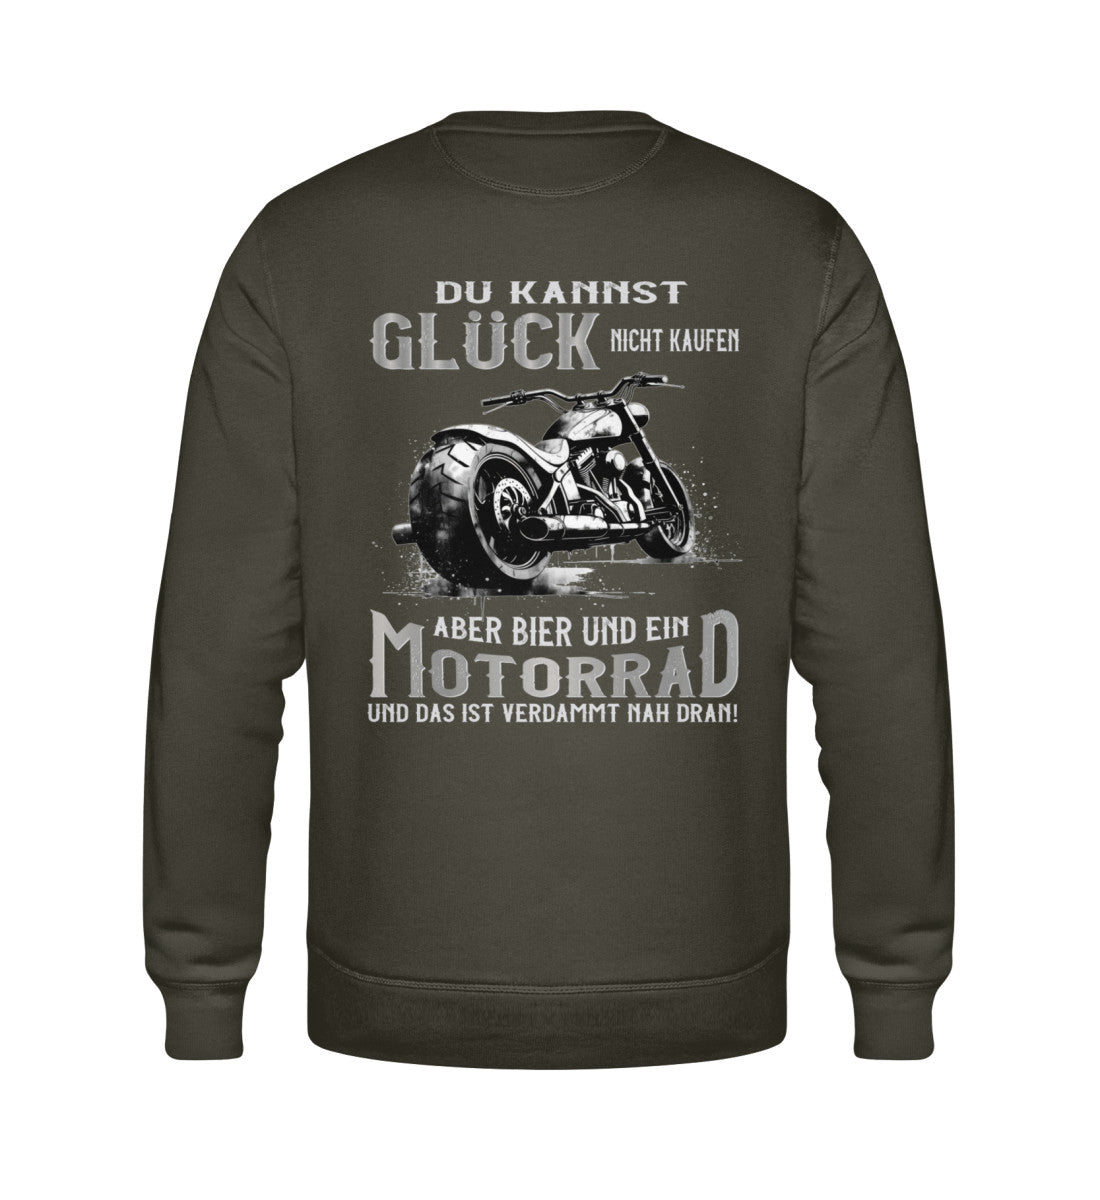 Ein Biker Sweatshirt für Motorradfahrer von Wingbikers mit dem Aufdruck, Du kannst Glück nicht kaufen, aber Bier und ein Motorrad und das ist verdammt nah dran! - mit Back Print, in khaki grün.